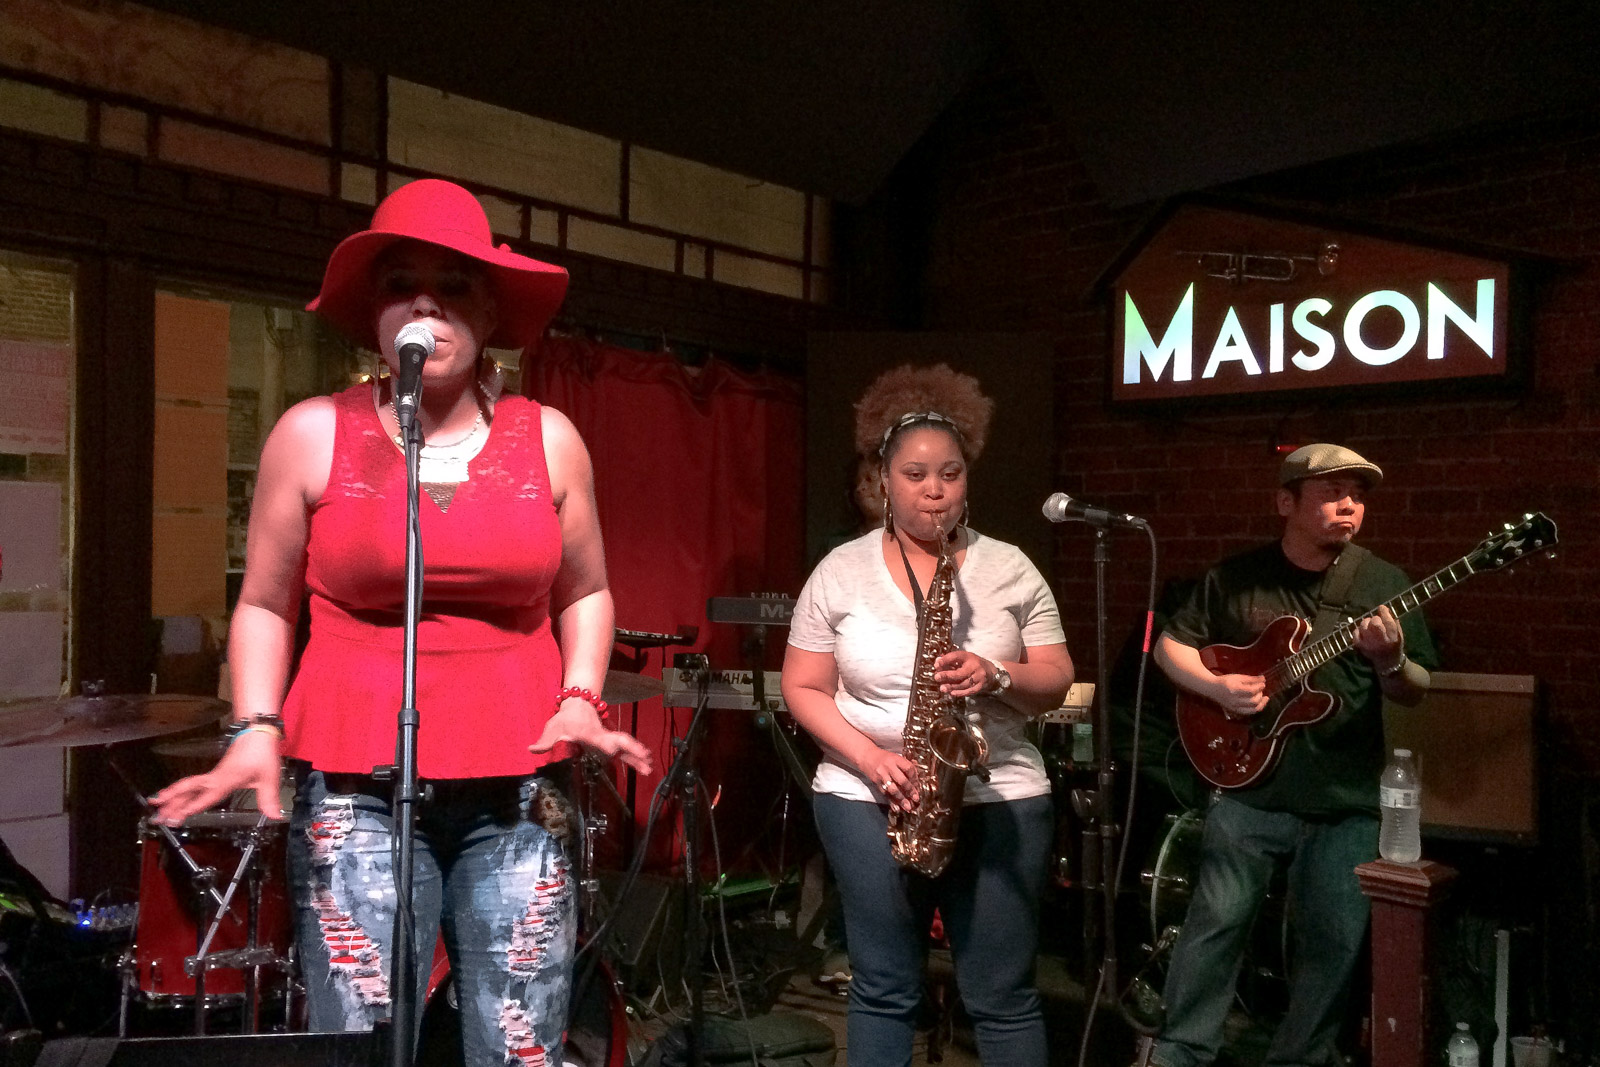 In Clubs wie dem Maison bekommt man feinsten Jazz oder Soul gratis - die Musiker freuen sich aber über Trinkgelder.